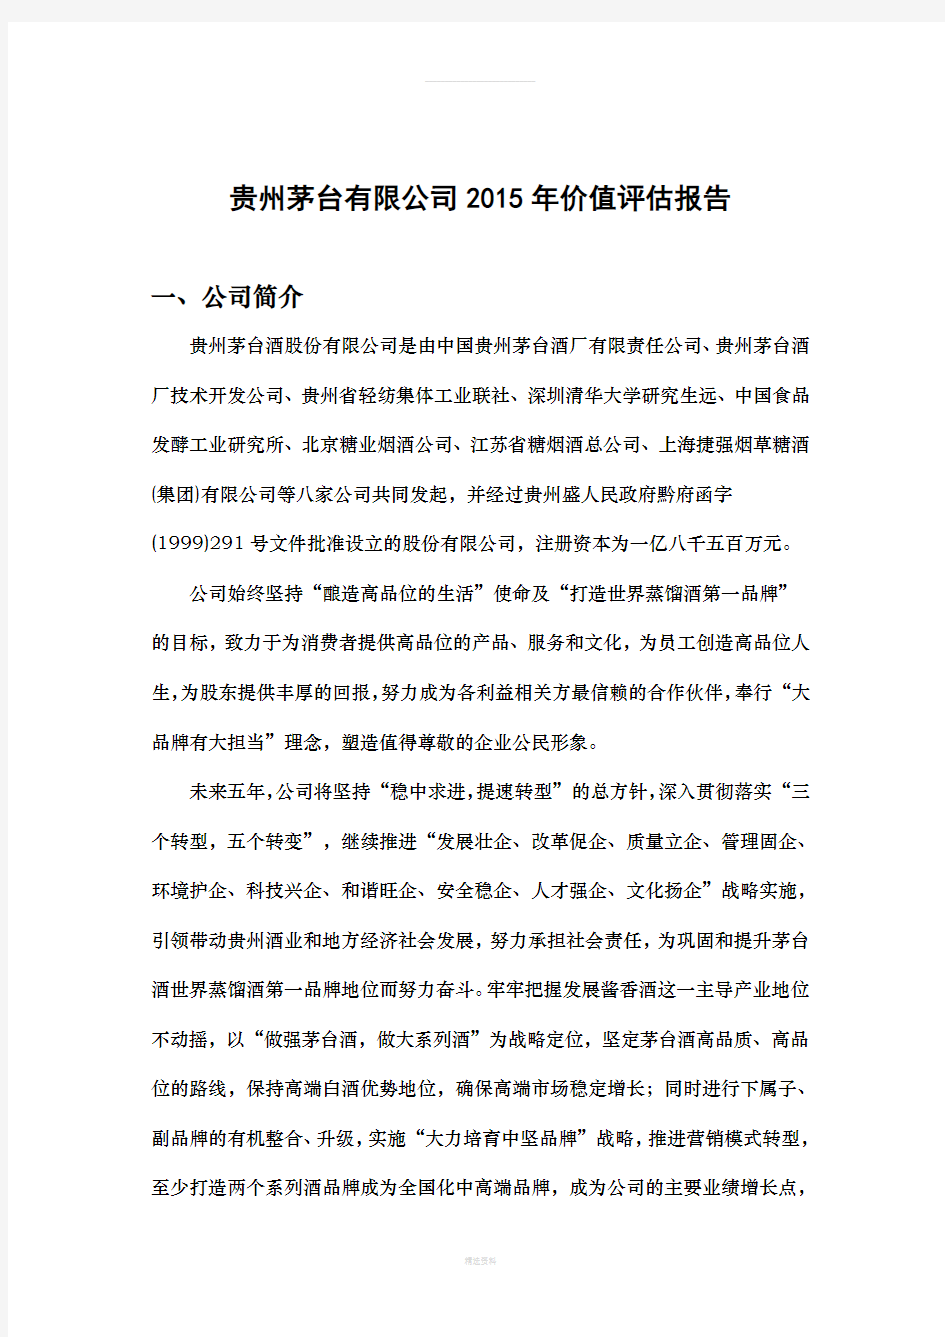 贵州茅台有限公司2015年价值评估报告